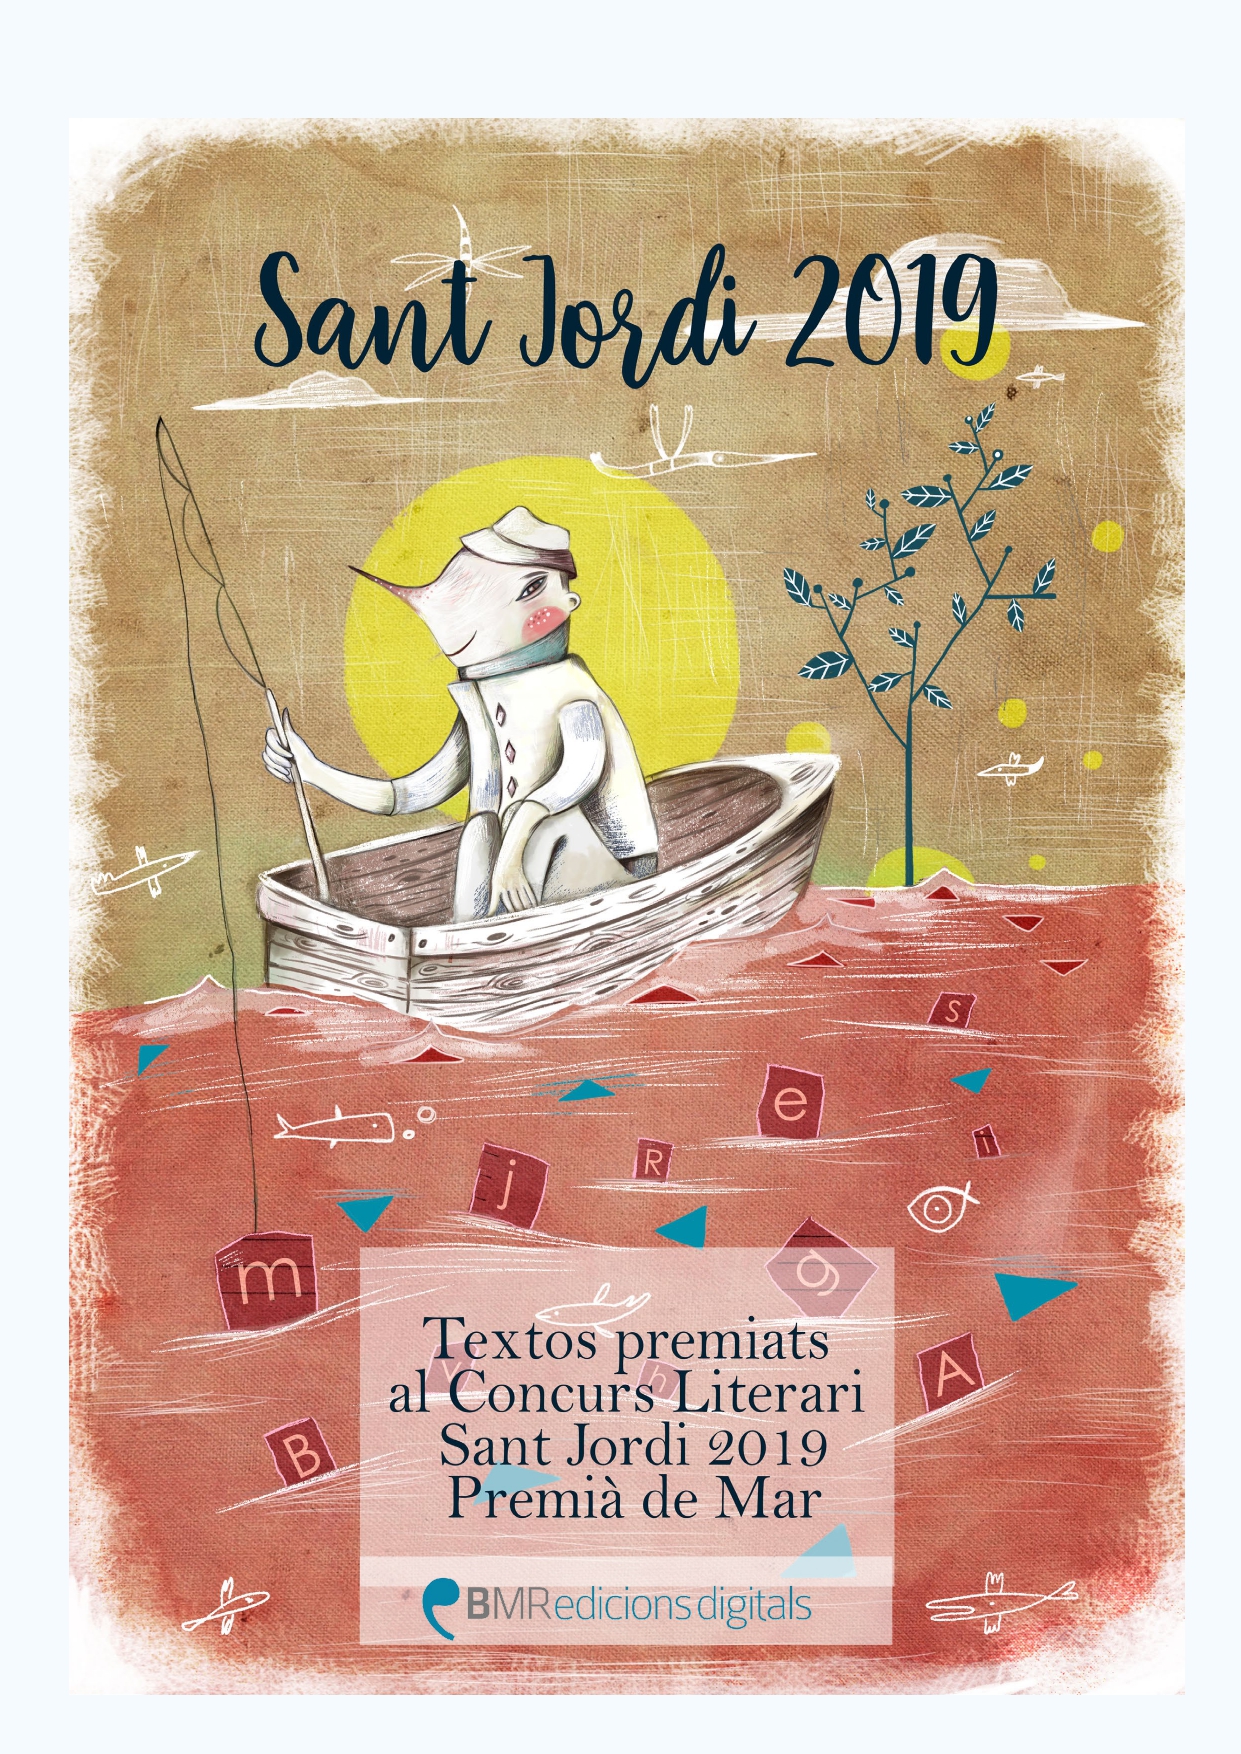 Coberta recull textos premiats Sant Jordi 2019